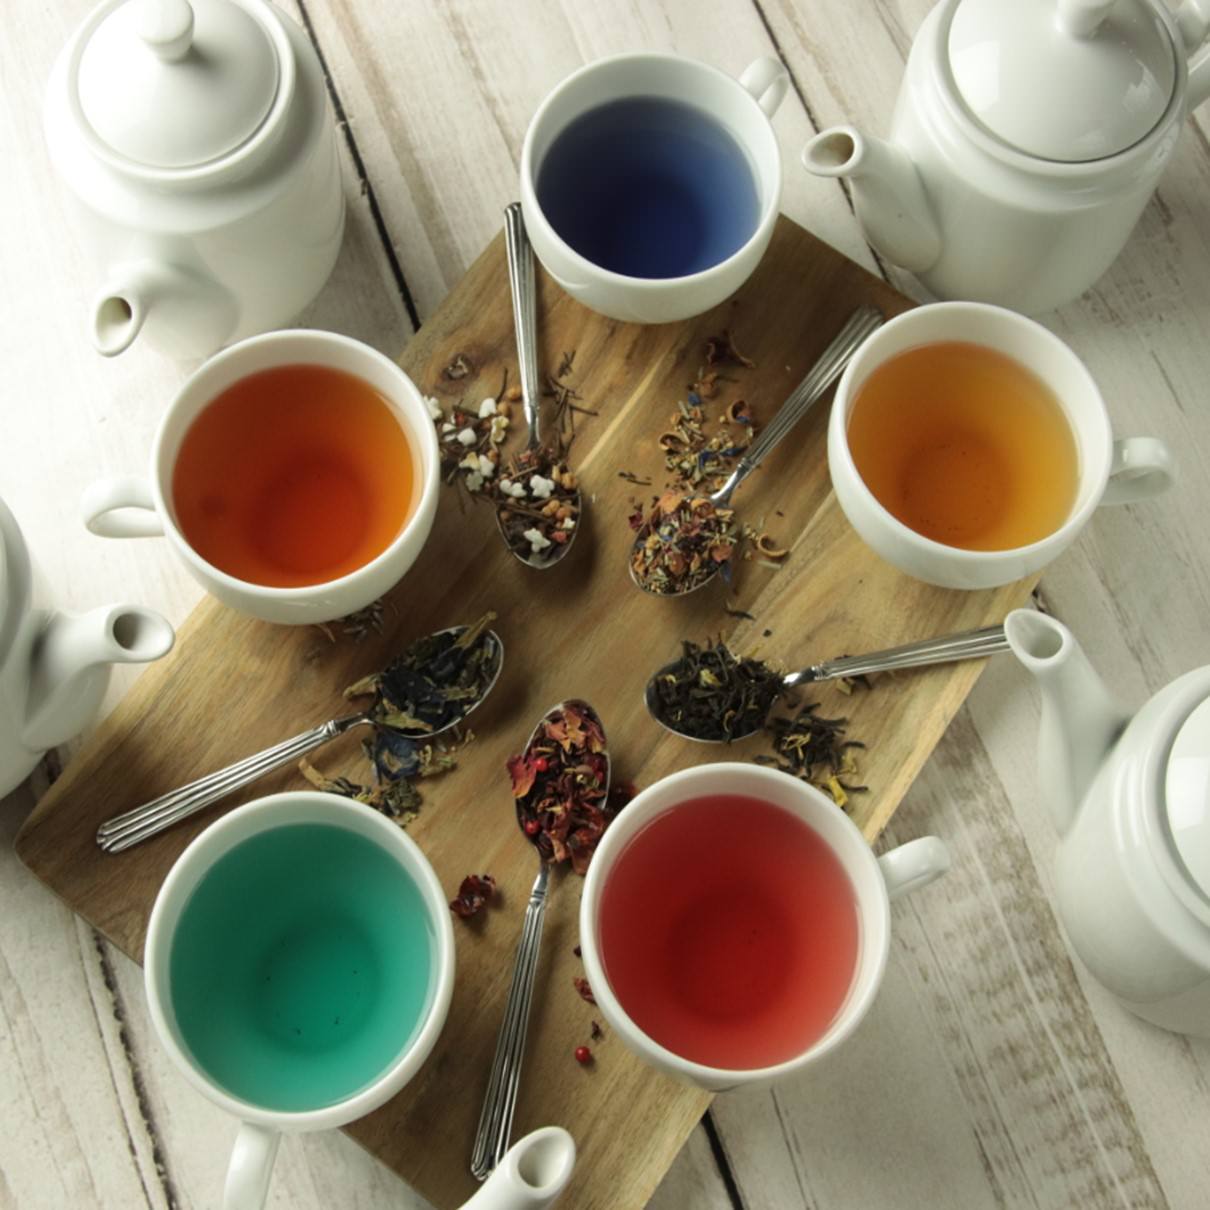 メルカパーラー自慢の紅茶も多数ご用意しております